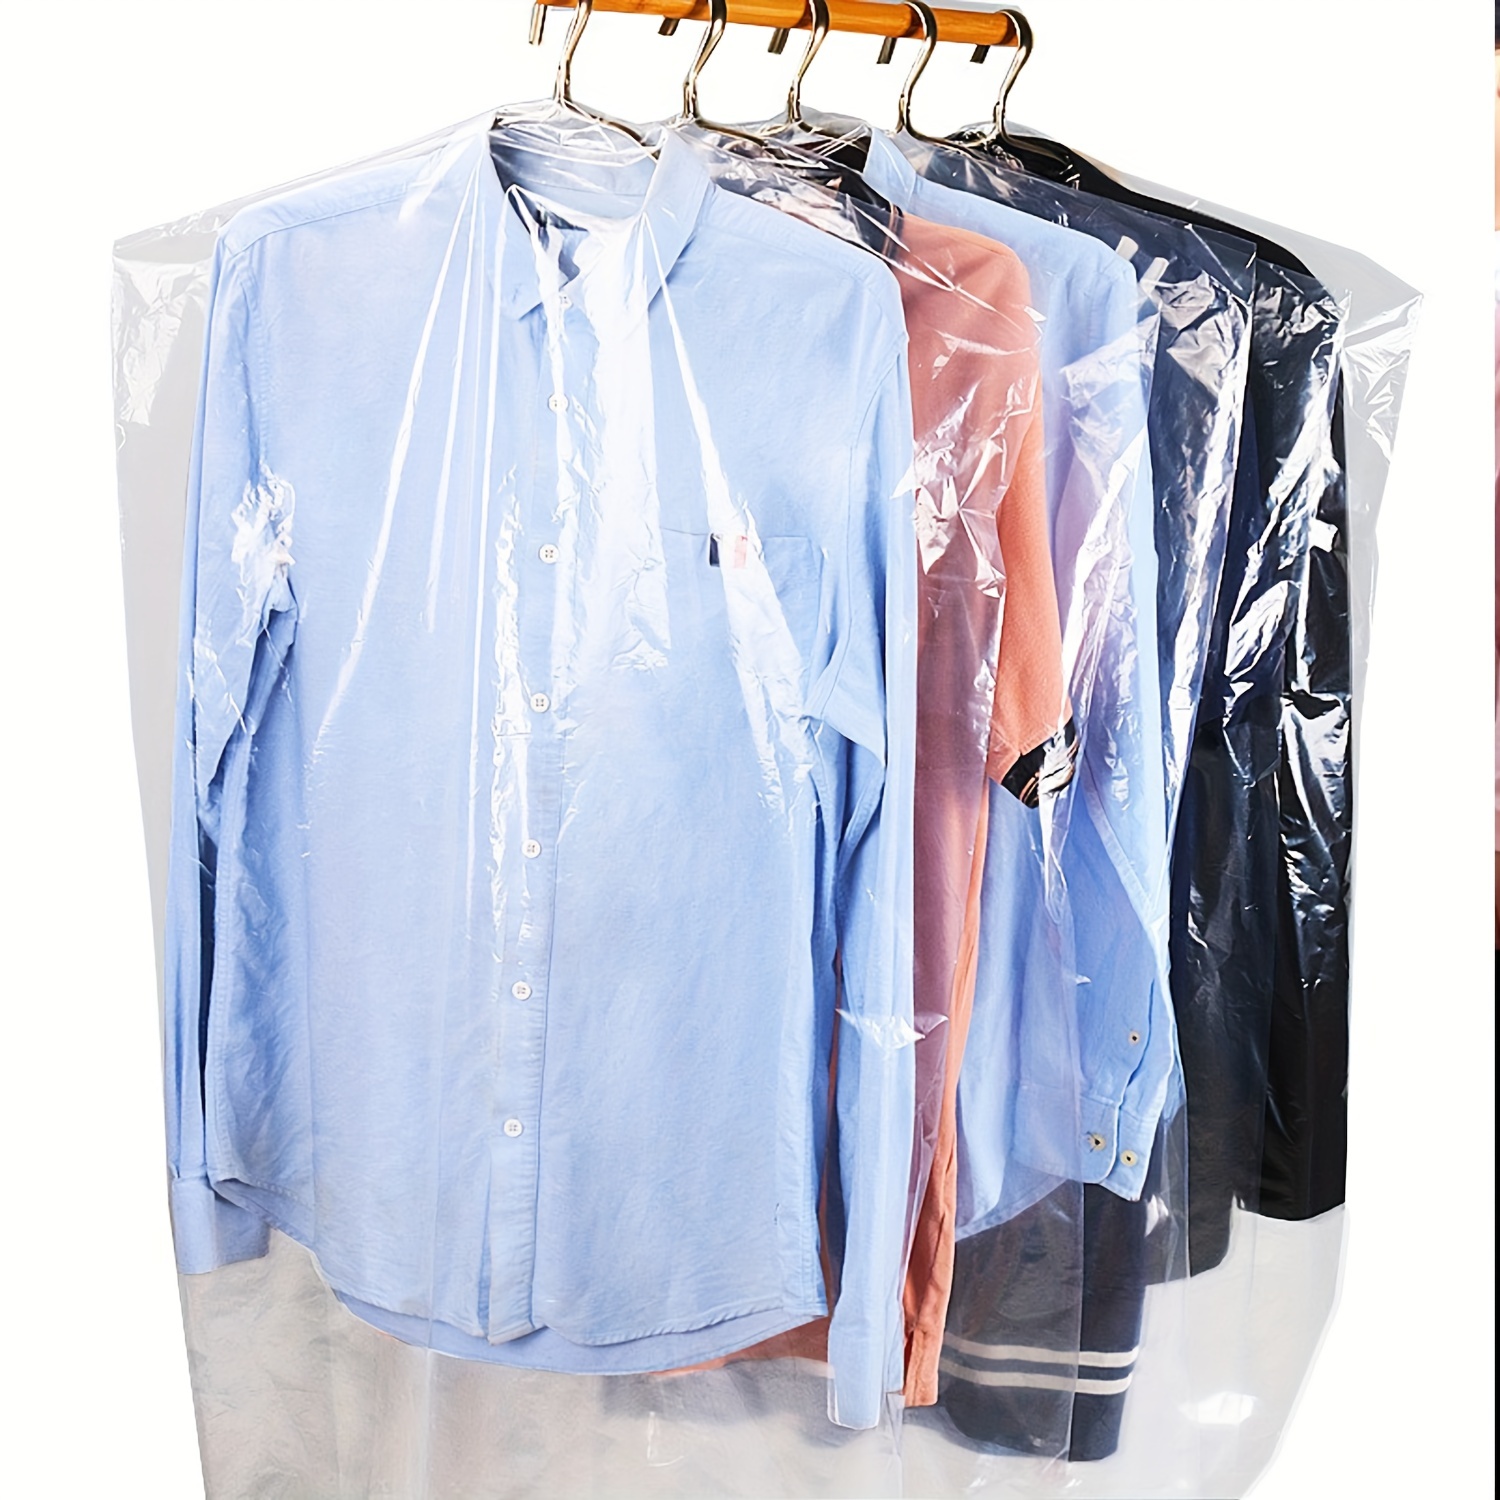 Paquete de 50 bolsas para ropa, funda transparente contra el polvo, ropa  colgante a prueba de polvo para tintorería, almacenamiento en el hogar,  viajes, armario para guardar ropa